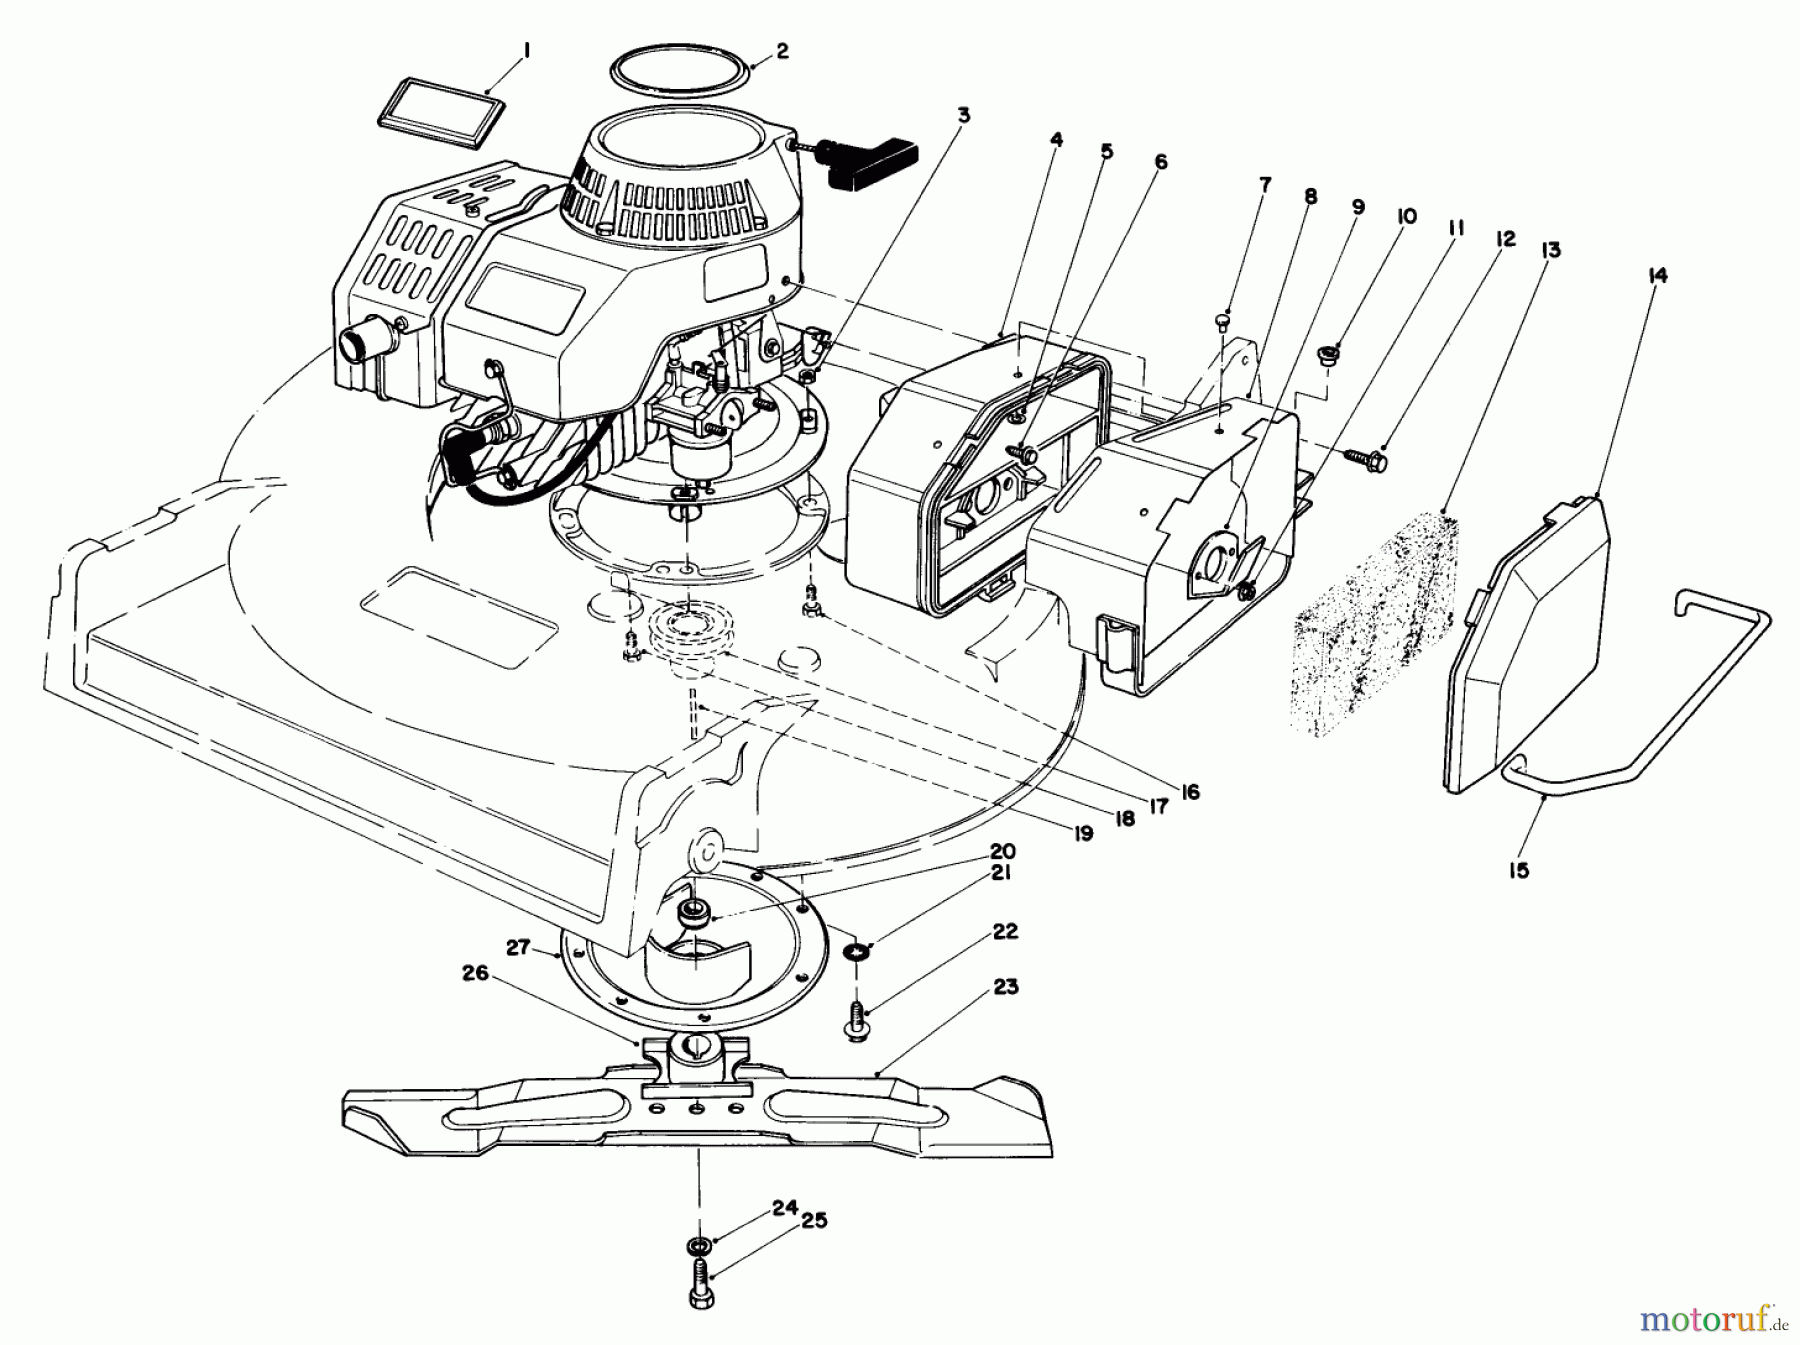  Toro Neu Mowers, Walk-Behind Seite 2 22030 - Toro Lawnmower, 1987 (7000001-7999999) ENGINE ASSEMBLY (MODEL 22035)